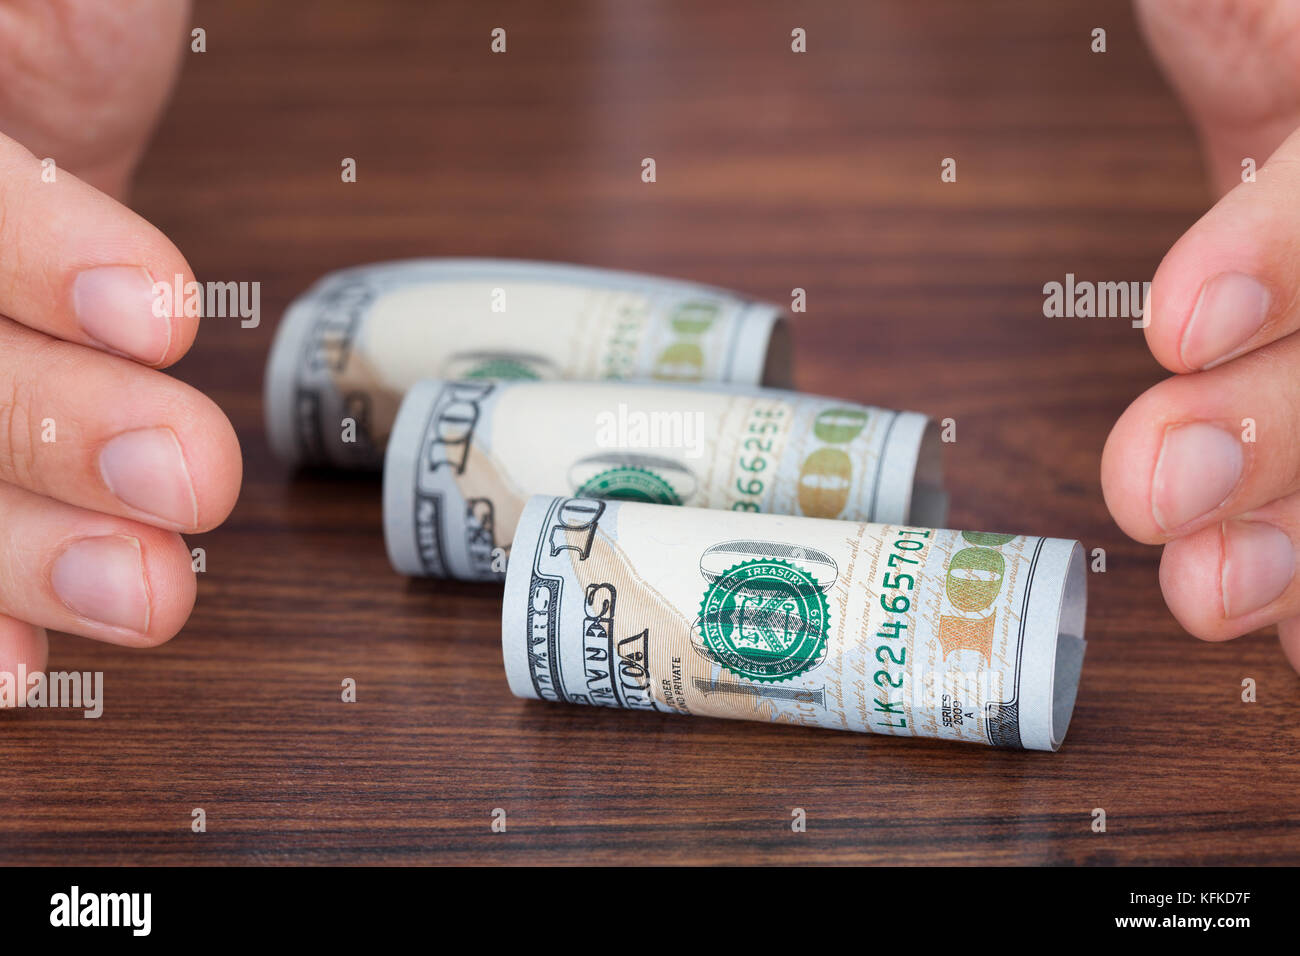 Immagine ritagliata delle mani la protezione di laminati di banconote sul tavolo Foto Stock